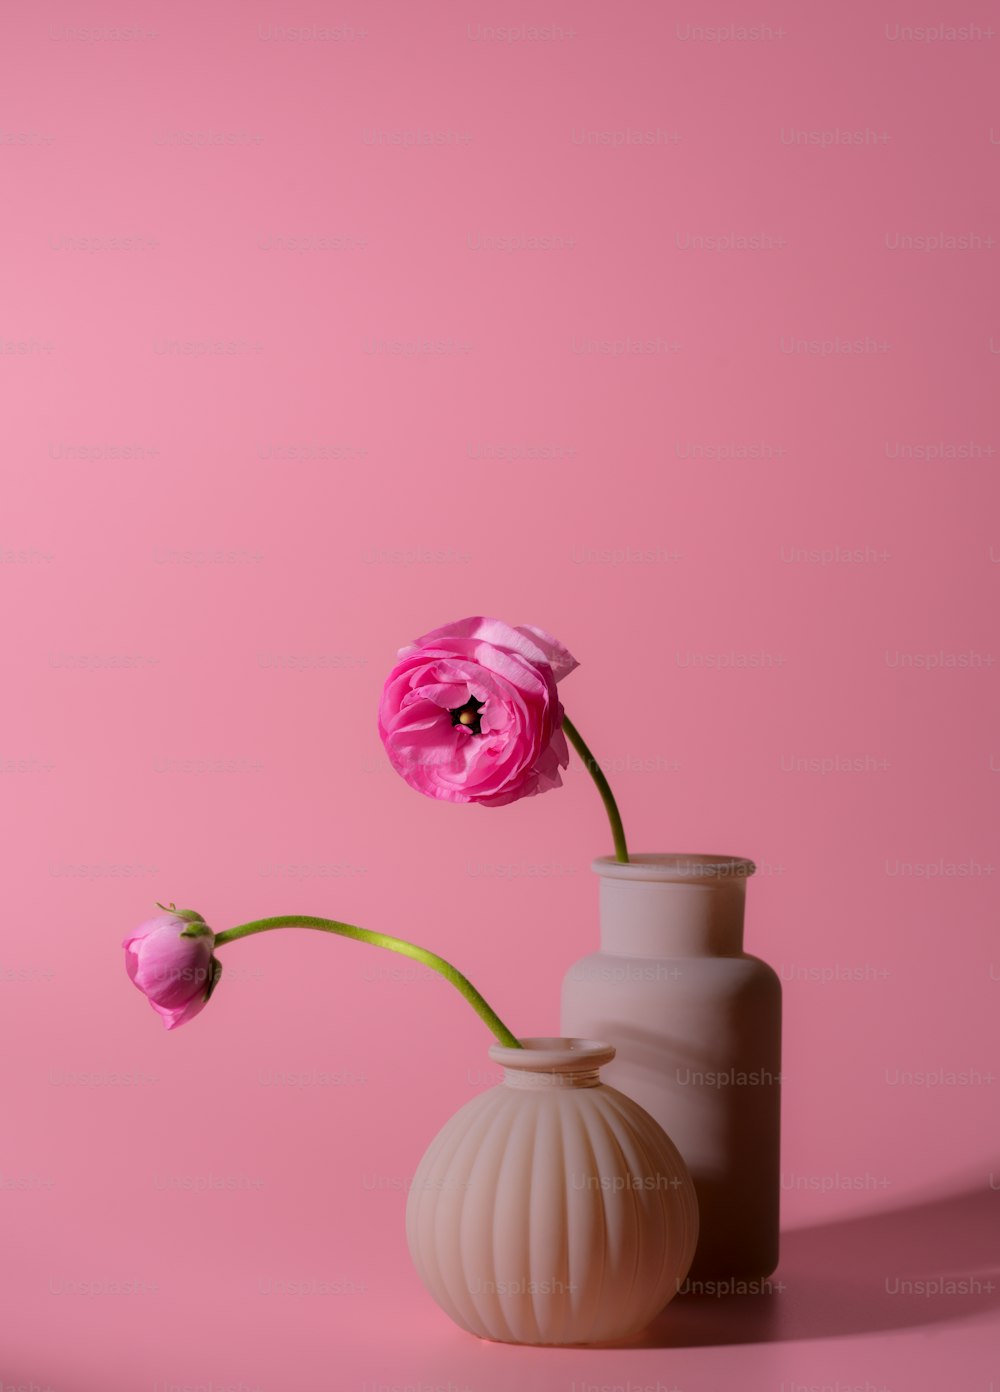 Una flor rosa en un jarrón blanco sobre un fondo rosa